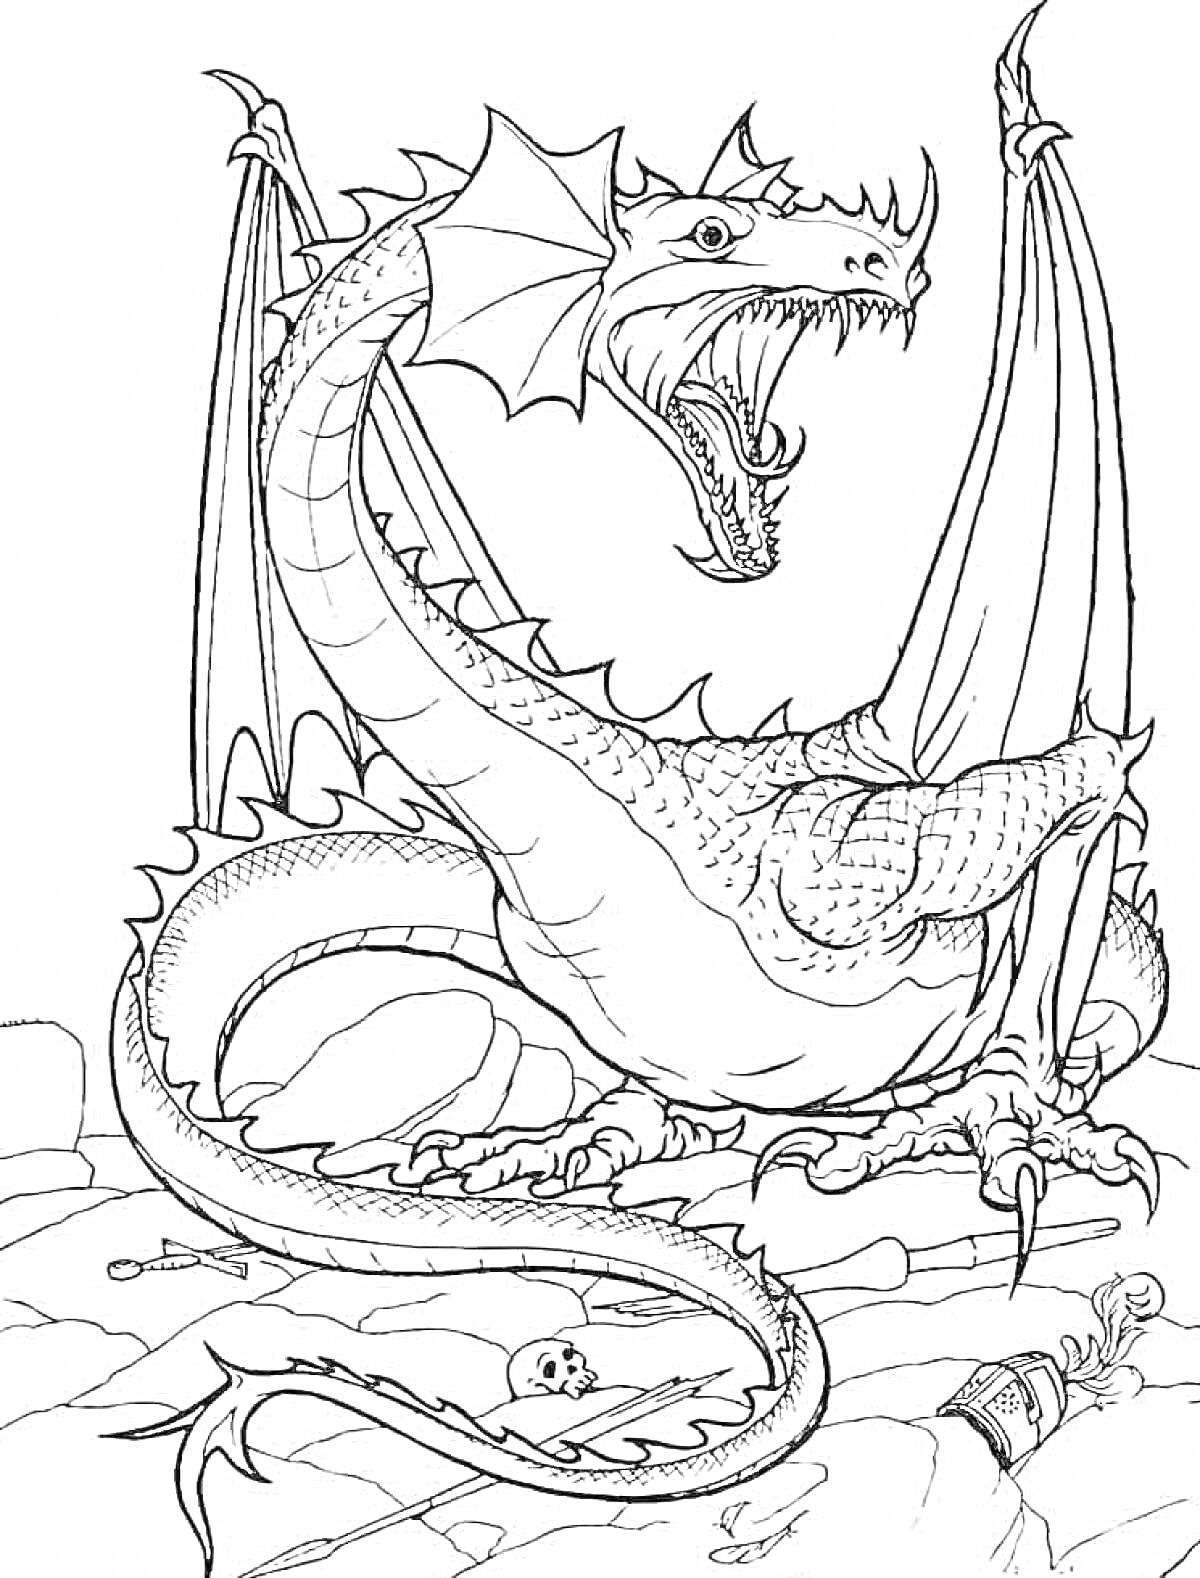 Раскраска дракон с расправленными крыльями на камнях, череп и кости у ног, бутылка и корона на земле